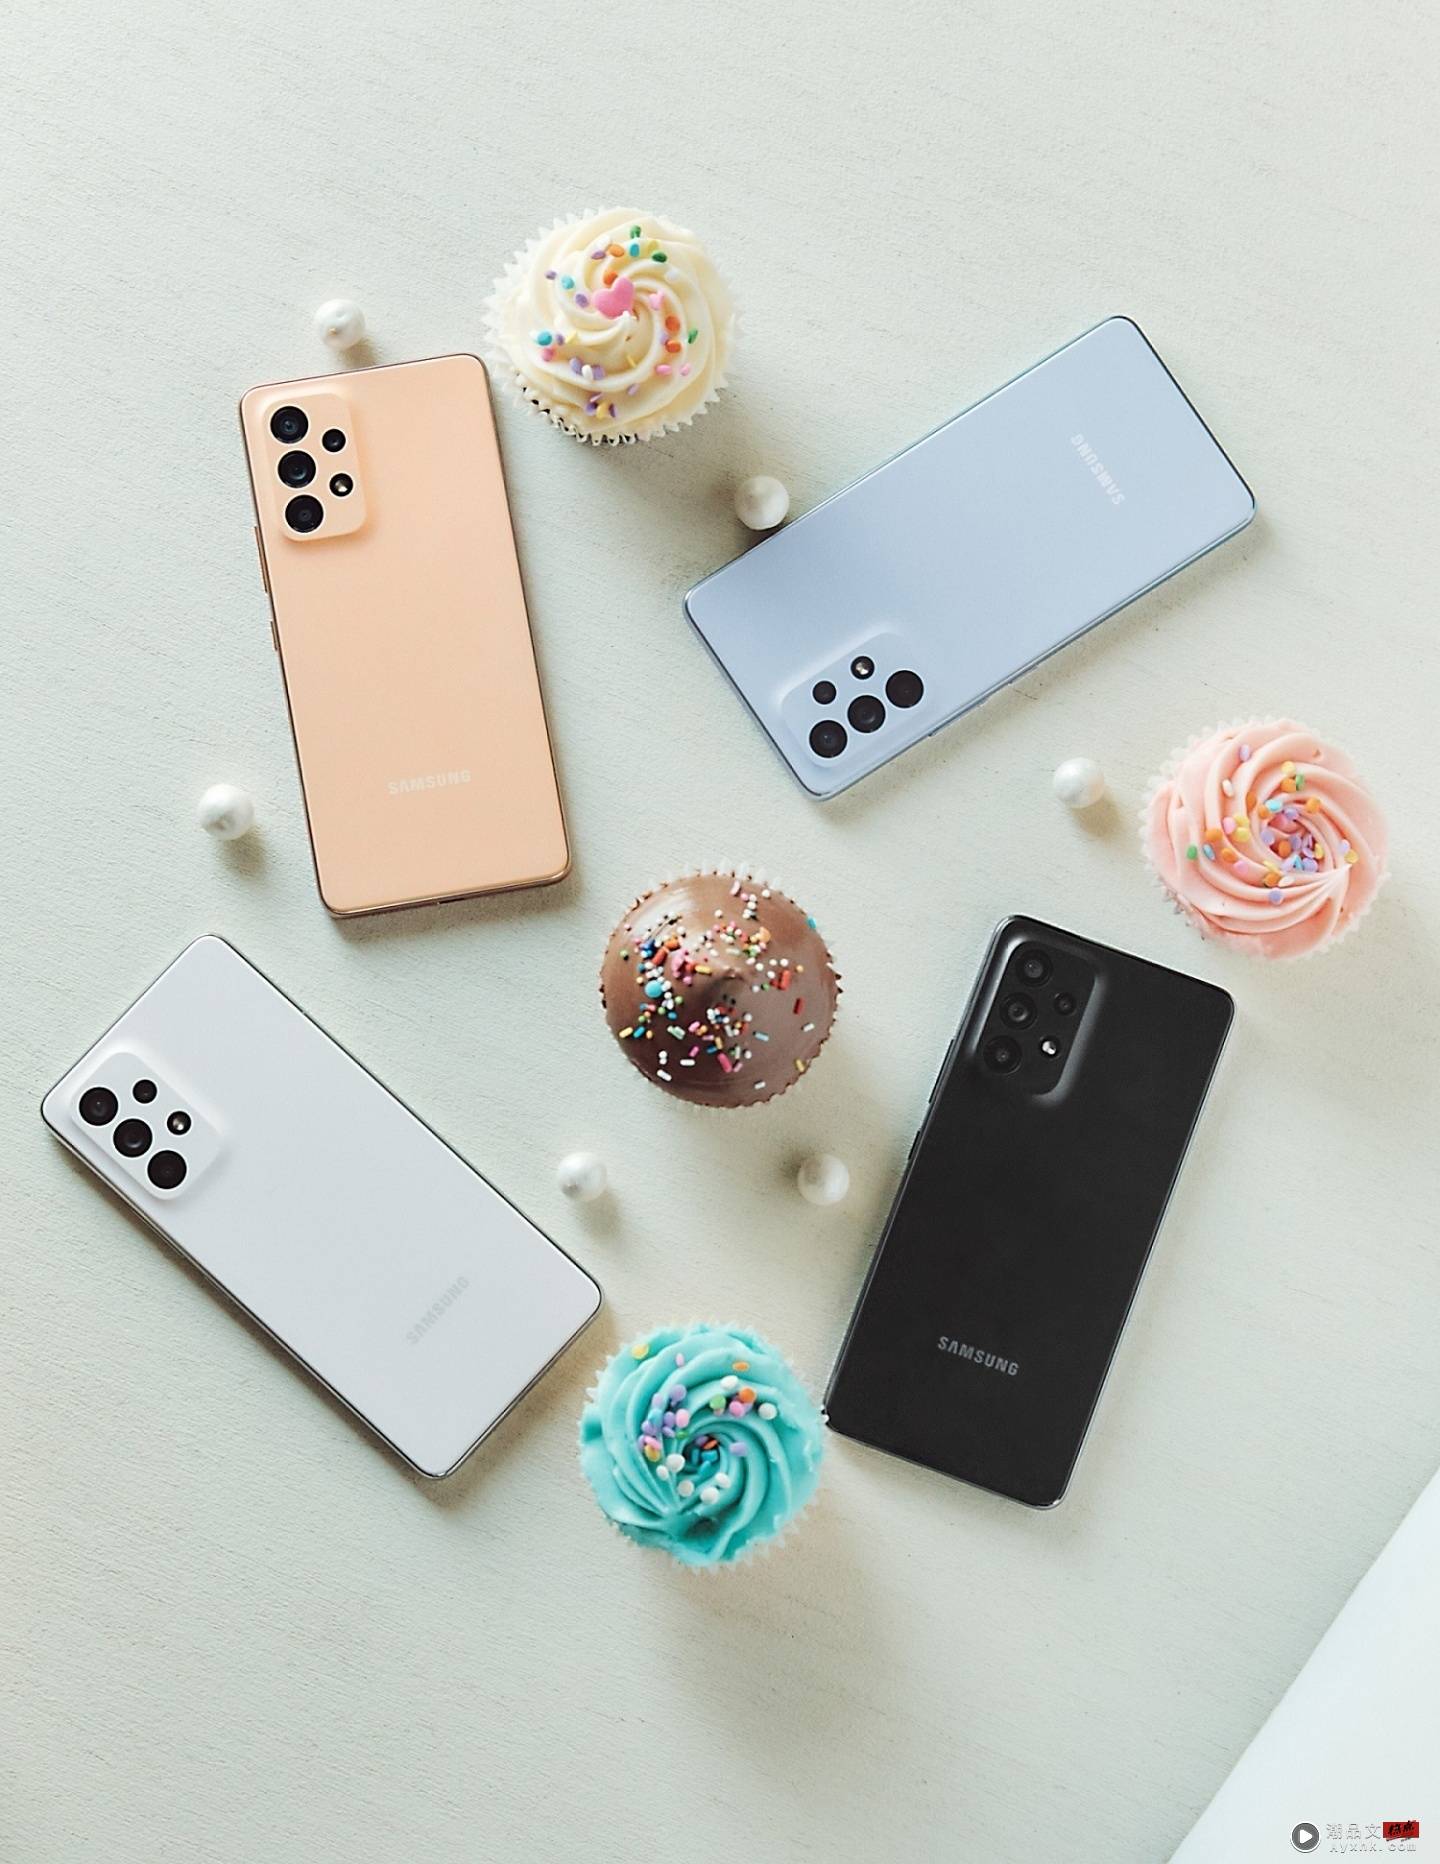 三星 Galaxy A53 5G、Galaxy A33 5G 开放预购啦！最低新台币 11,990 元就能入手 数码科技 图4张